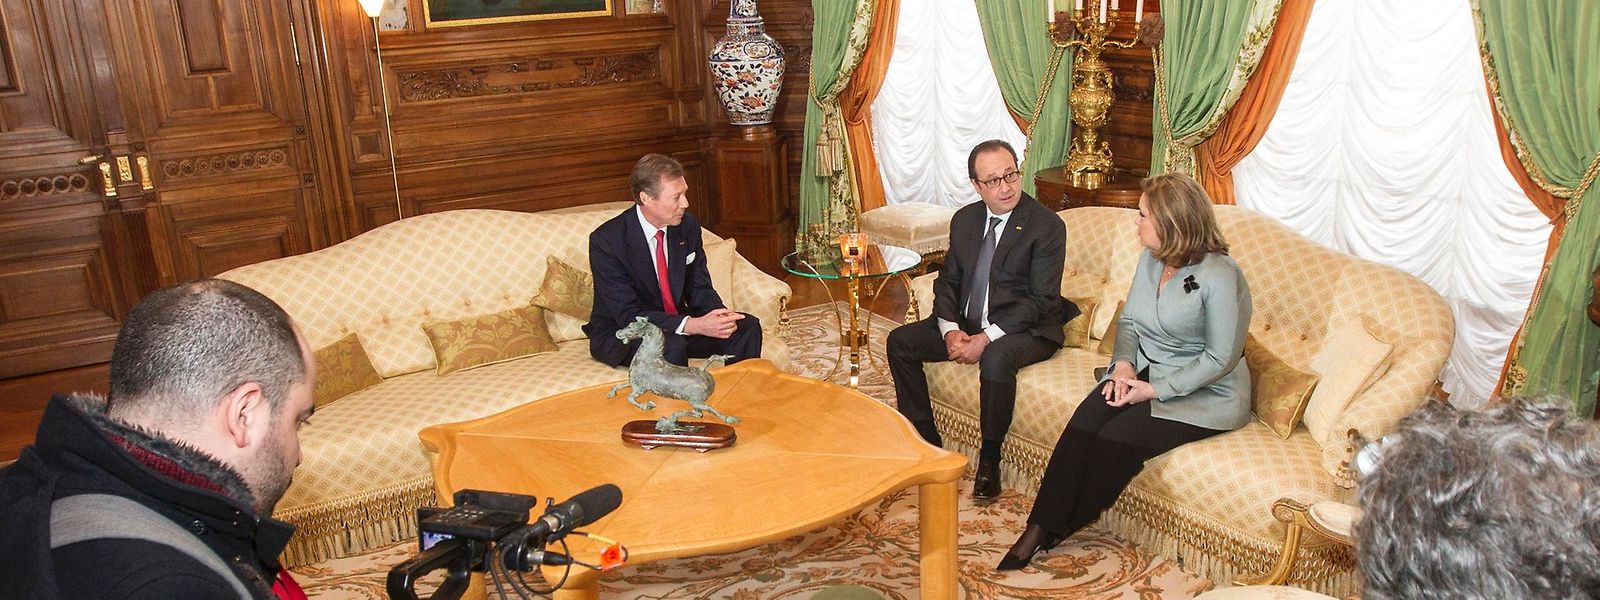 Le président français, François Hollande, avec le couple grand-ducal, a annoncé un mouvement d'harmonisation fiscale, pourtant encore très loin du compte